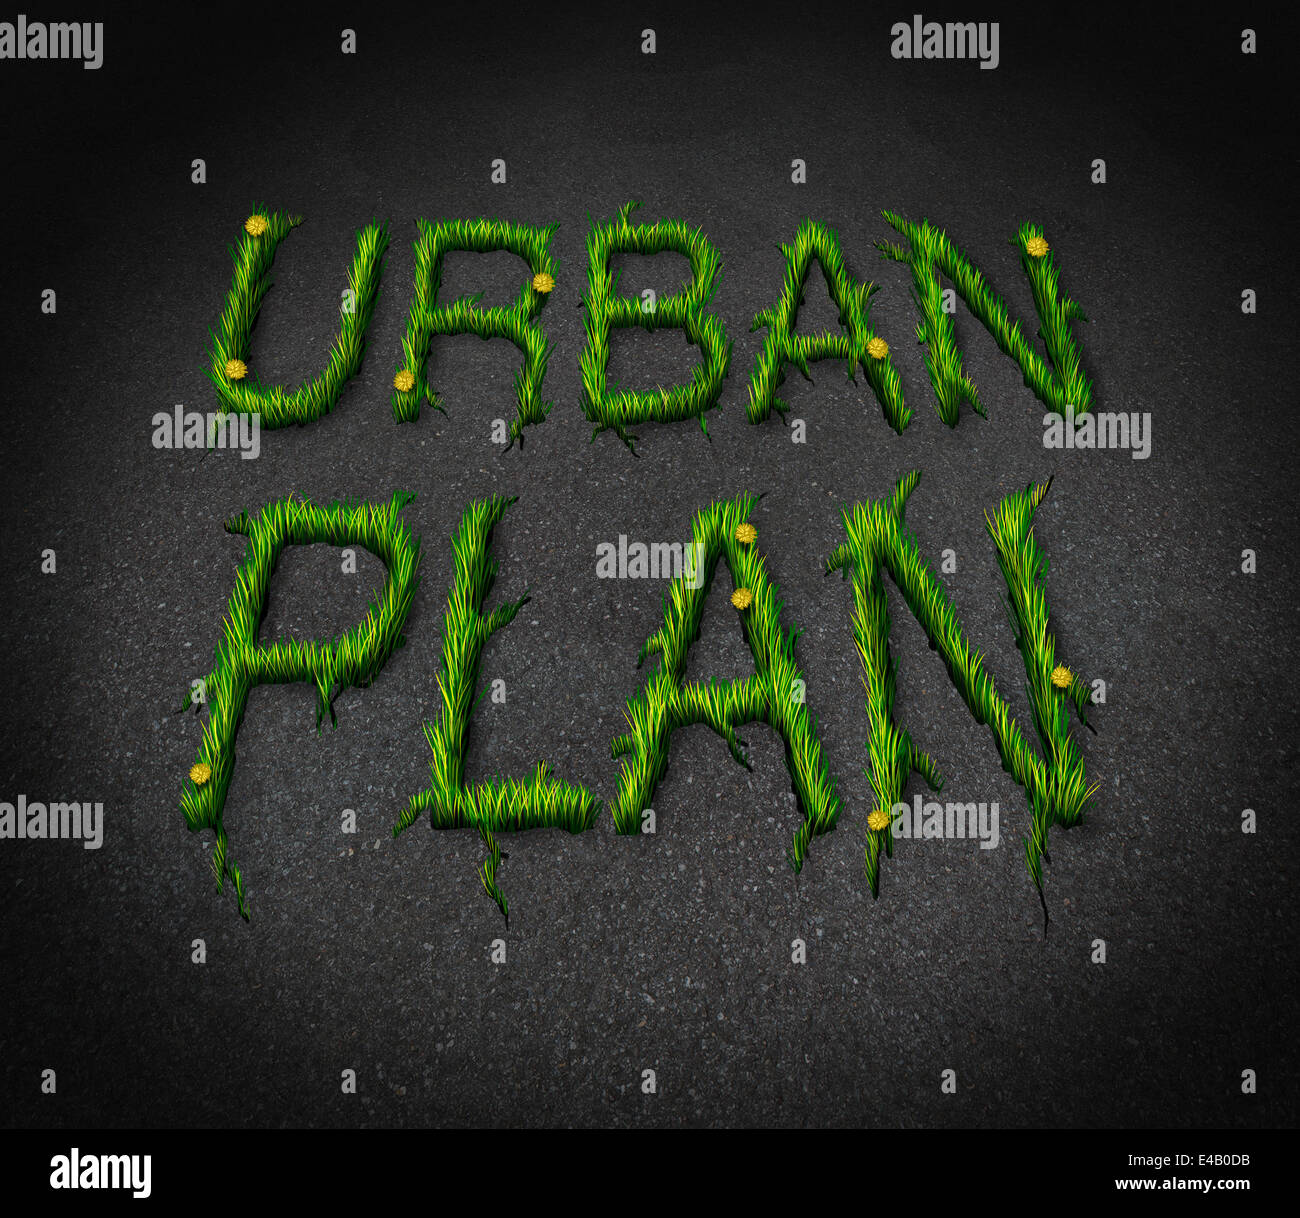 Urban Plan Konzept als eine Asphalt-Stadt-Etage mit Risse geformt als Text und Grass als eine Erneuerung und Nachbarschaft Erholung Entwicklung Symbol und Metapher für die Planung verantwortlich. Stockfoto